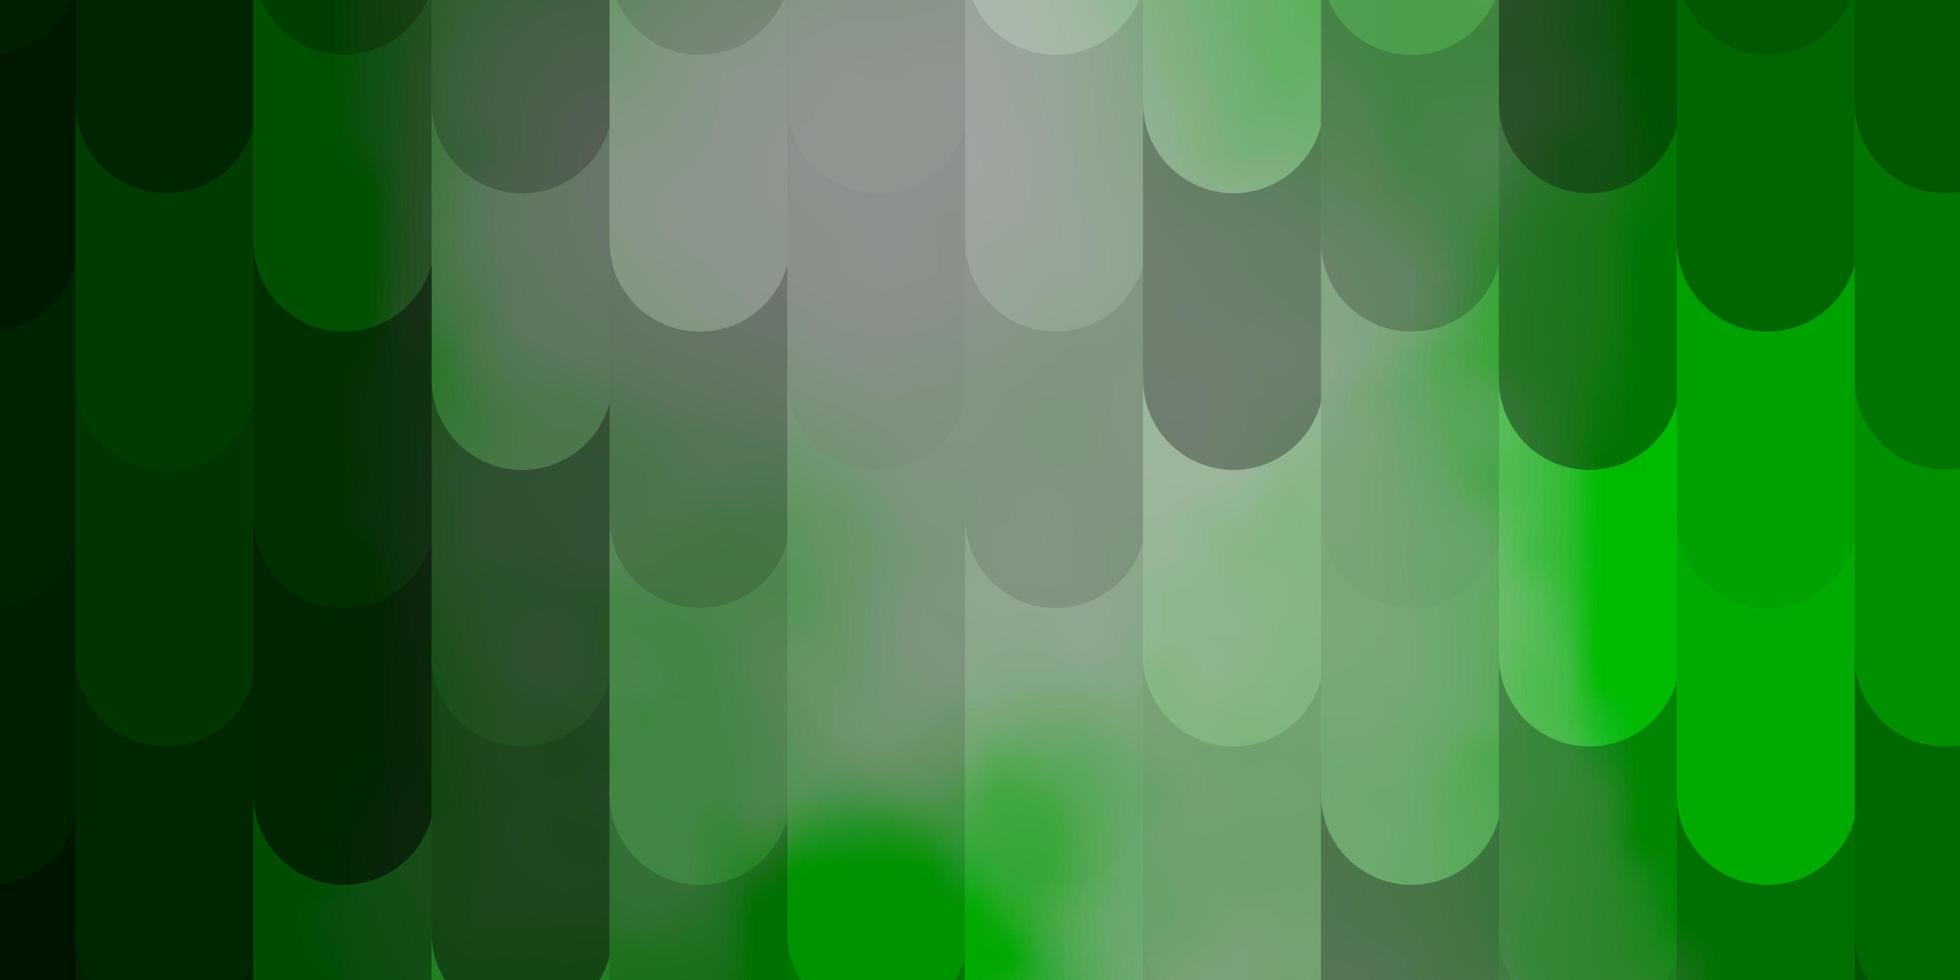 Telón de fondo de vector verde claro con líneas.